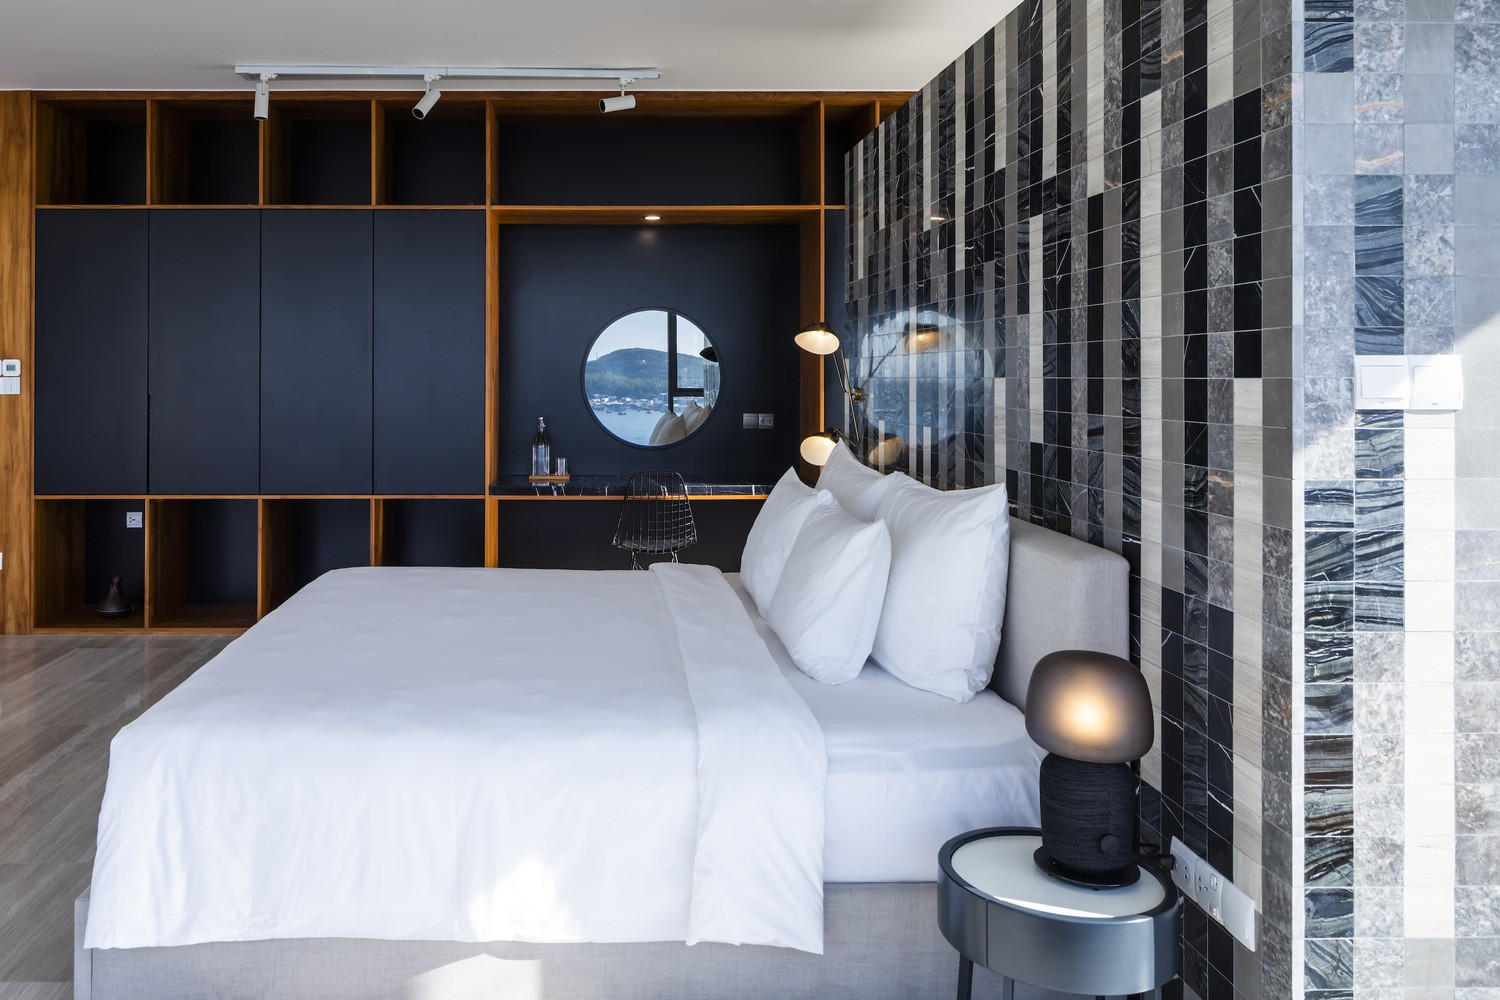 Nội thất tối giản, các phòng ngủ mang lại cảm giác lơ lửng trên không gian bao la của cảnh quan xung quanh.